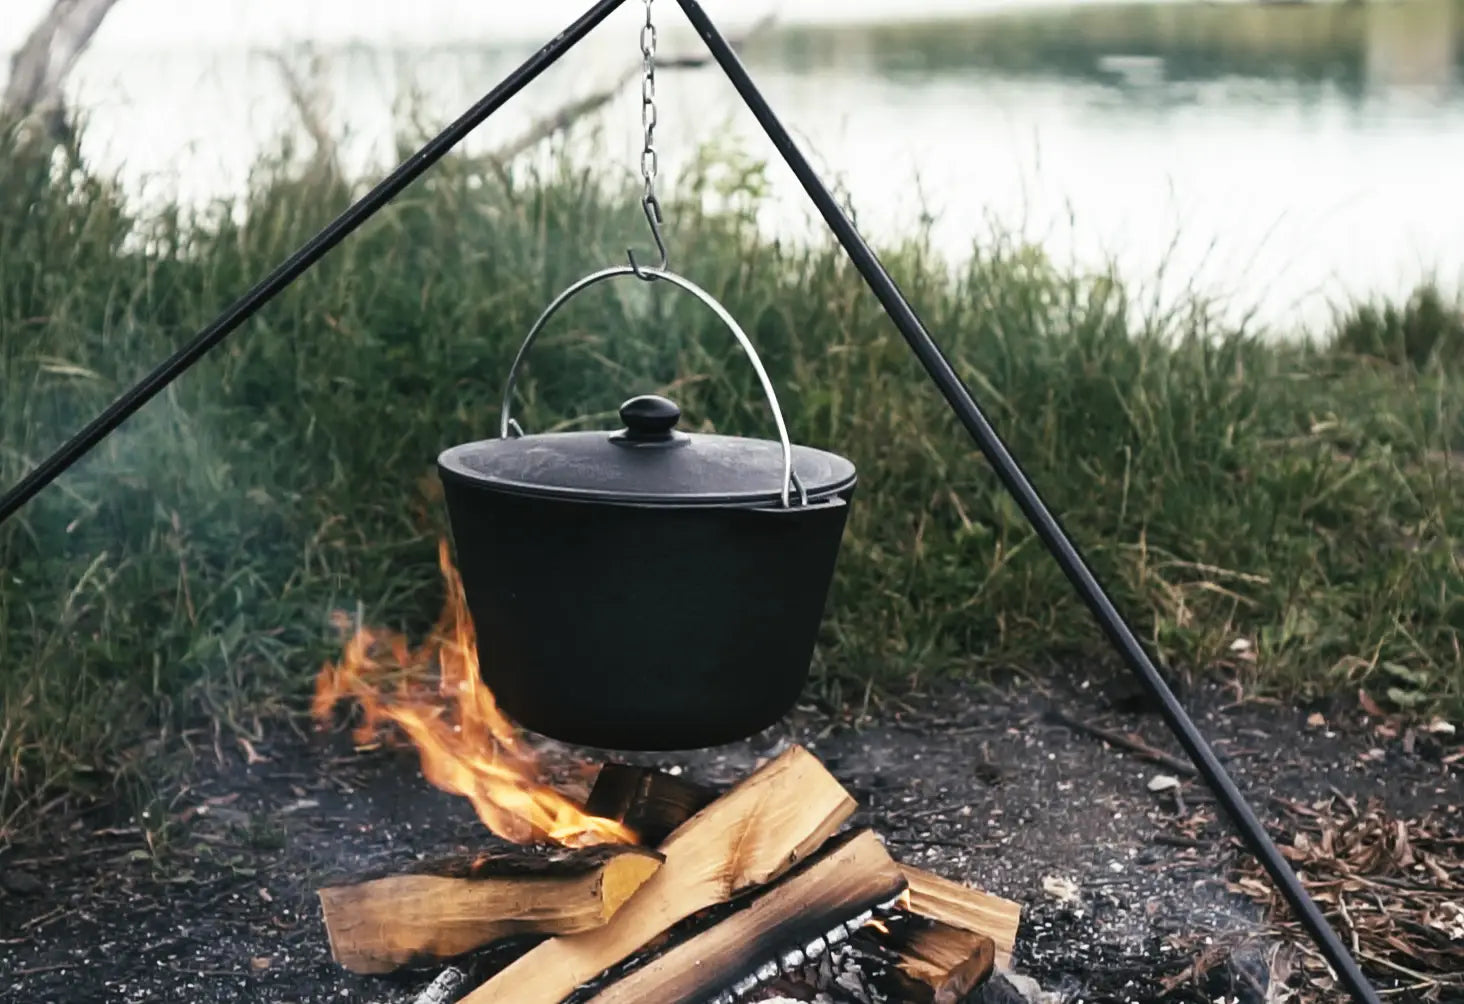 6.34 Quarts Dutch Oven Pot with Lid, Cast Iron Cauldron Uzbek Kazan Cast Iron, Premium Camping Cookware